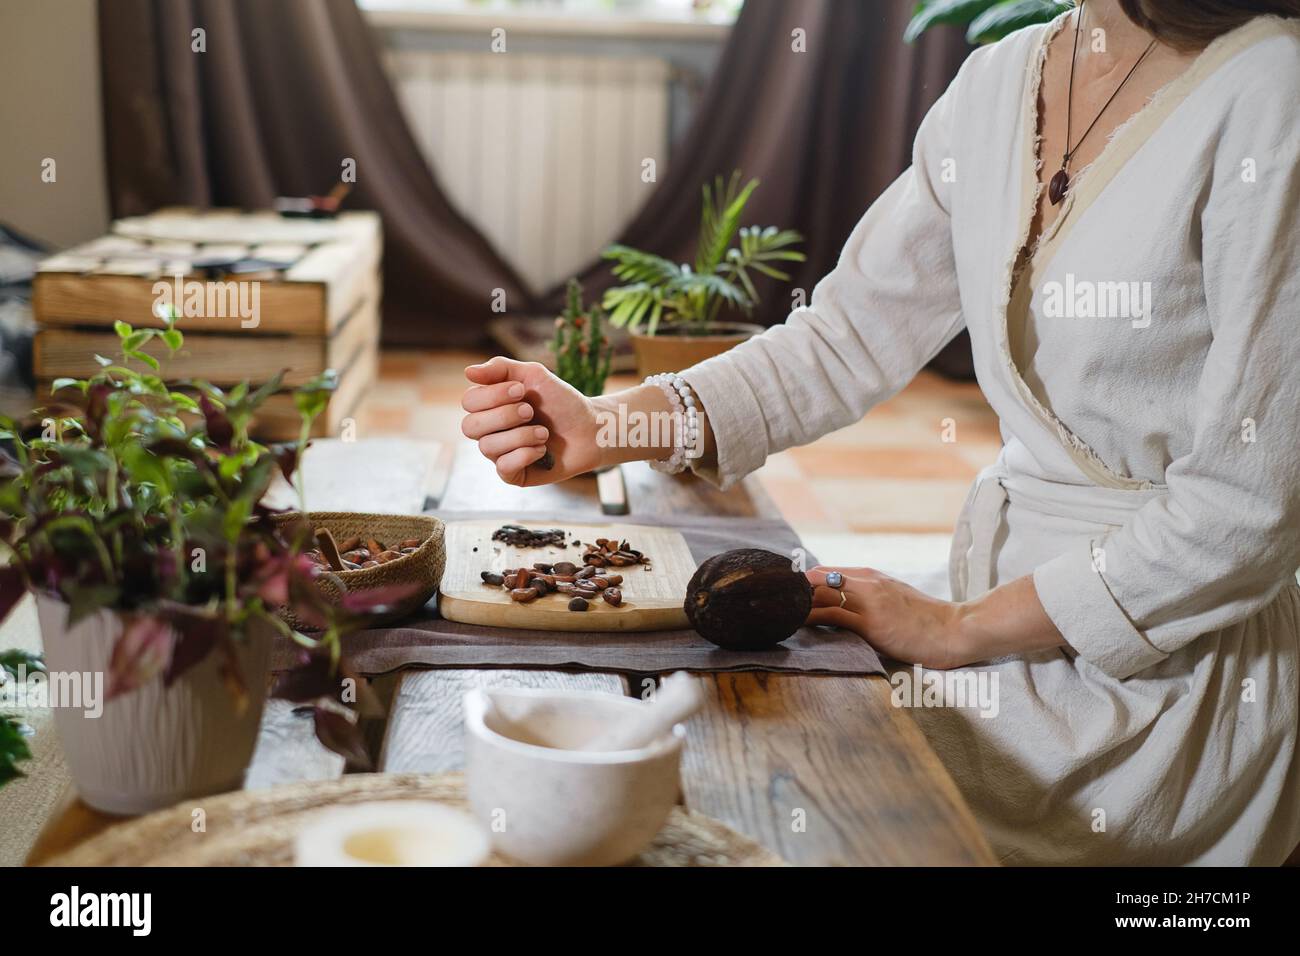 Heißer handgemachter zeremonieller Kakao in Tasse. Frau Hände halten hausgemachten Kakao, Draufsicht auf Holztisch. Bio gesundes Schokoladengetränk, zubereitet aus Stockfoto